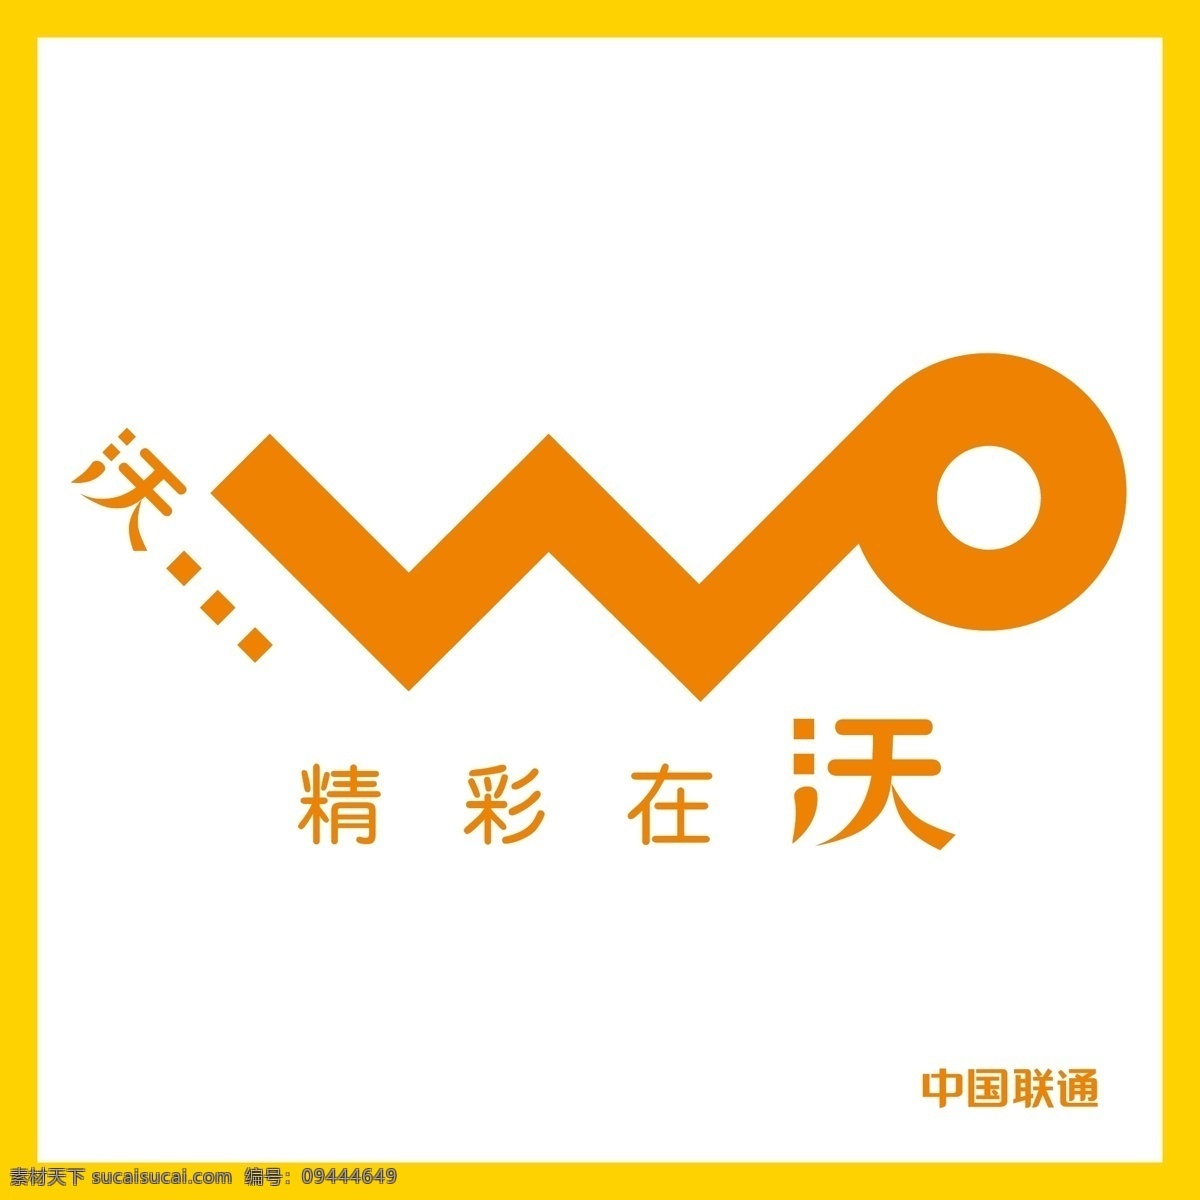 联通 精彩 沃 logo 精彩在沃 中国联通 4g 通信 网络 上网冲浪 标志 矢量 vi logo设计